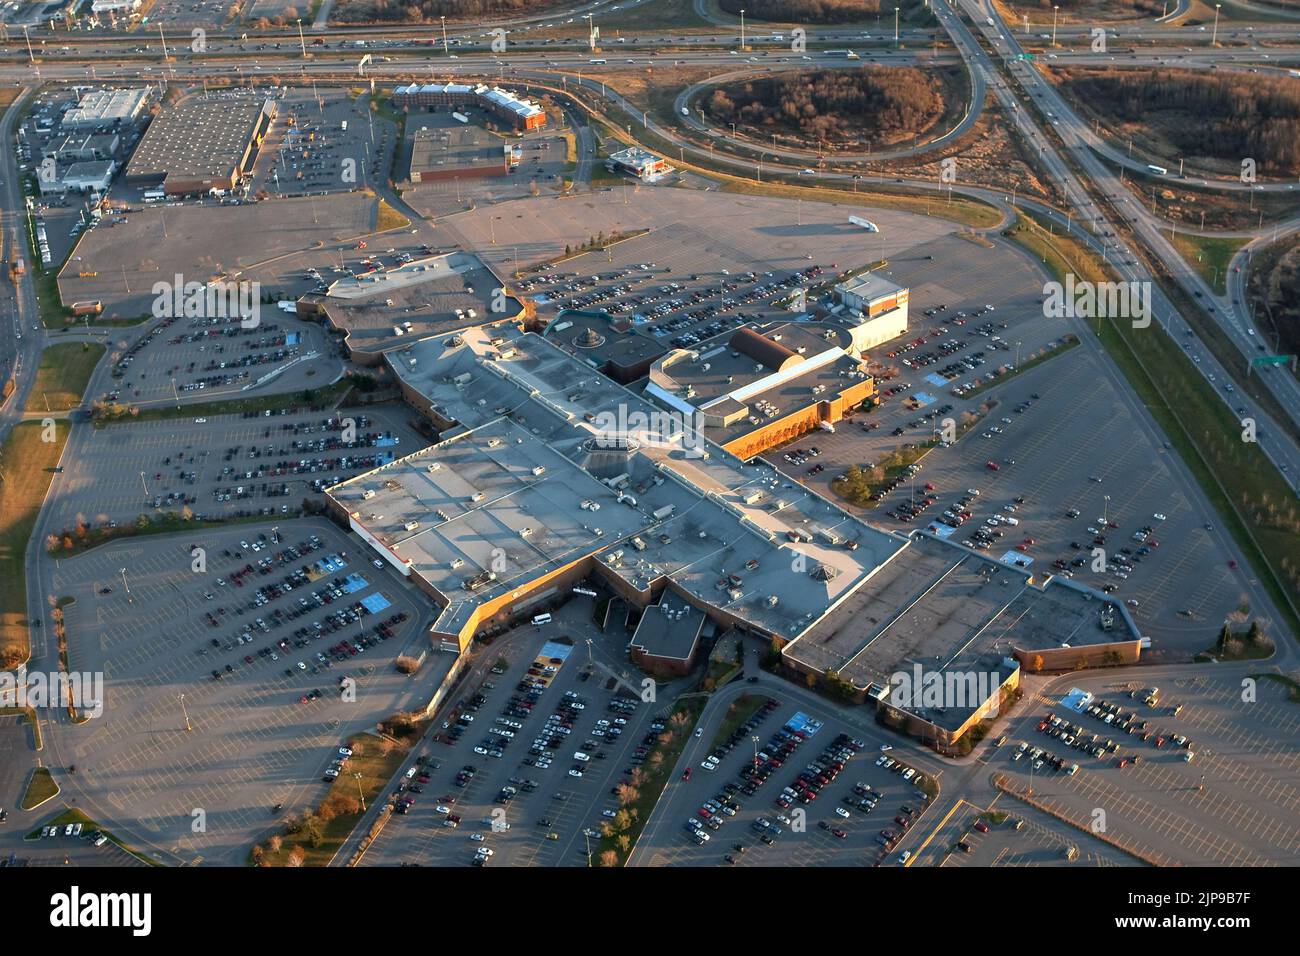 Das Einkaufszentrum Les Galleries de la Capitale in der Stadt Quebec ist auf diesem Luftbild vom 11. November 2009 abgebildet. Meistbesuchtes Einkaufszentrum das größte Einkaufszentrum der Stadt, Les Galleries de la Capitale, verfügt über 280 Geschäfte, 35 Restaurants und das IMAX-Kino mit der größten Leinwand in Kanada. Stockfoto